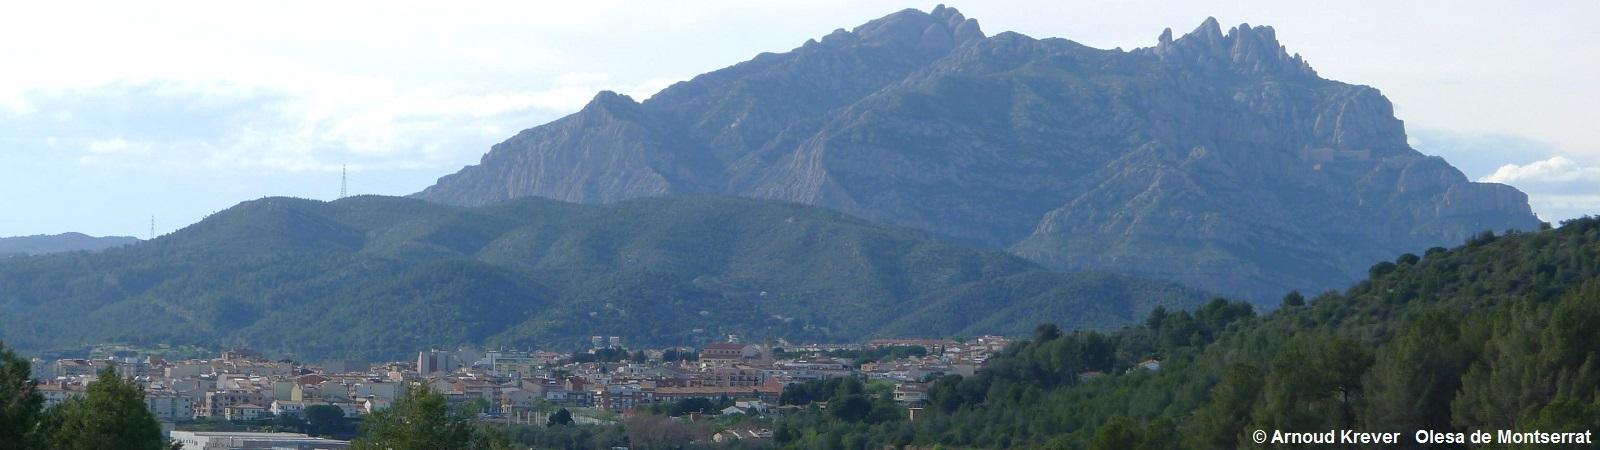 16BarS (227) Uitzicht op Olesa de Montserrat